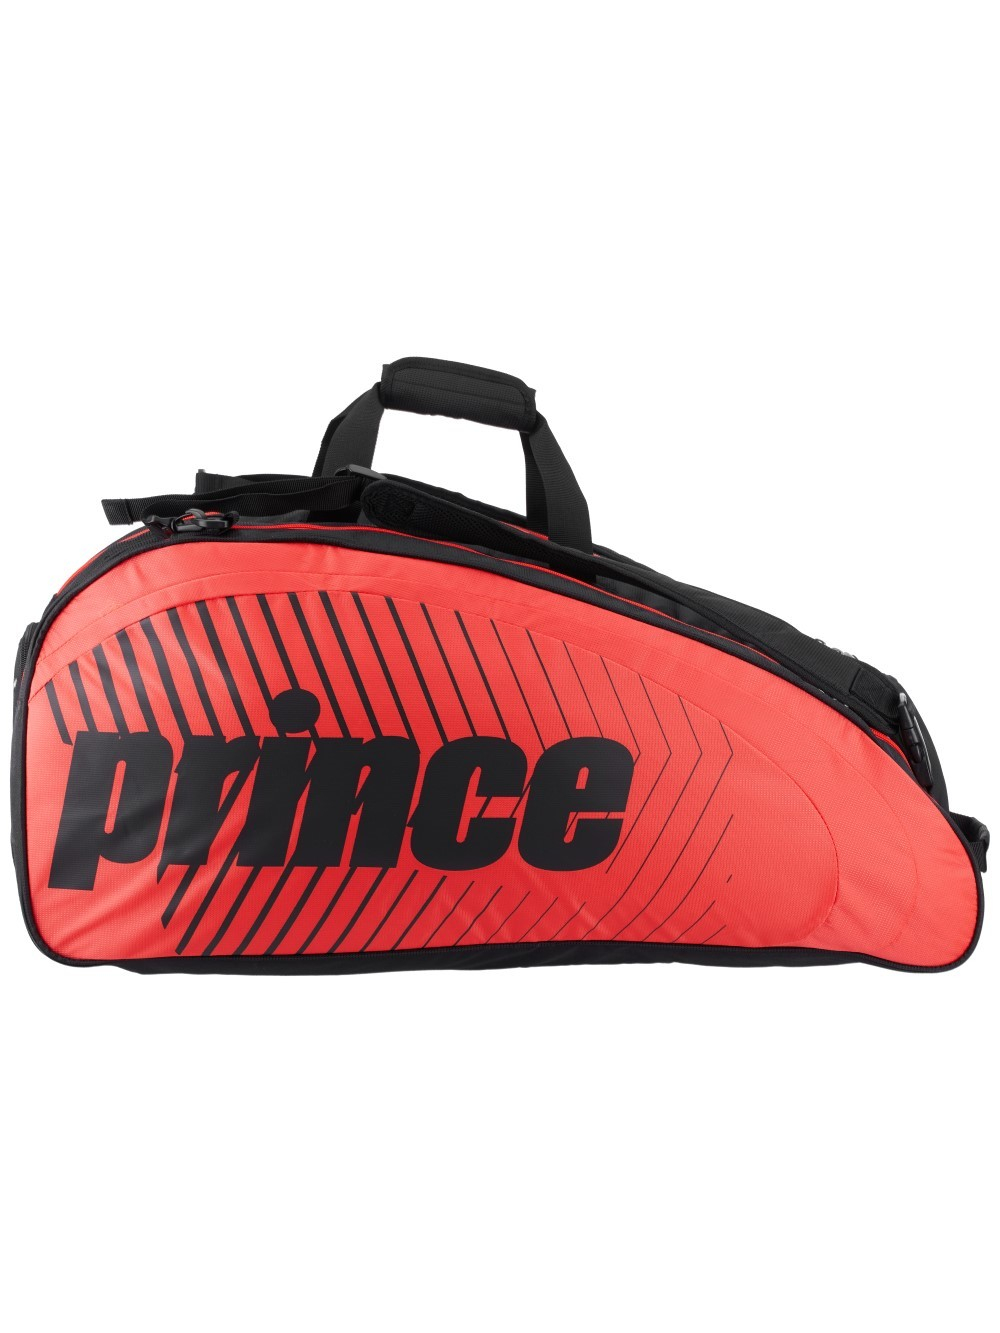 Теннисная сумка Prince Tour Challenger красная (9 ракеток)